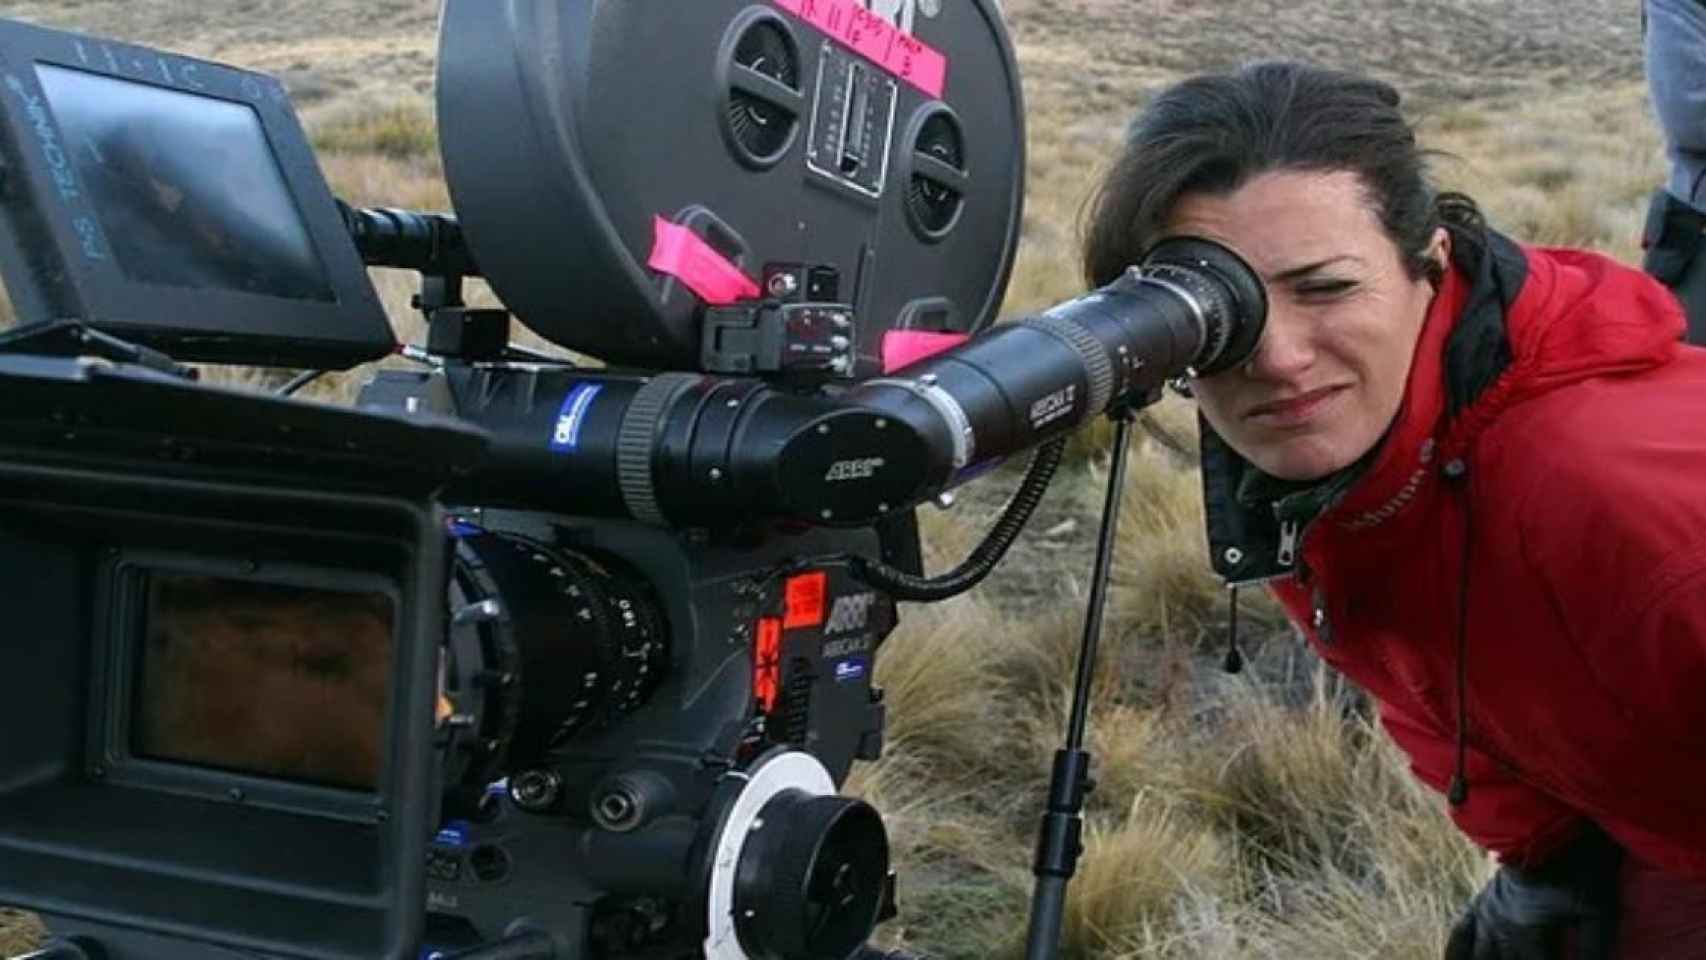 La realizadora Laura Mañá en pleno rodaje de una de sus películas / LAURA MAÑÁ OFICIAL